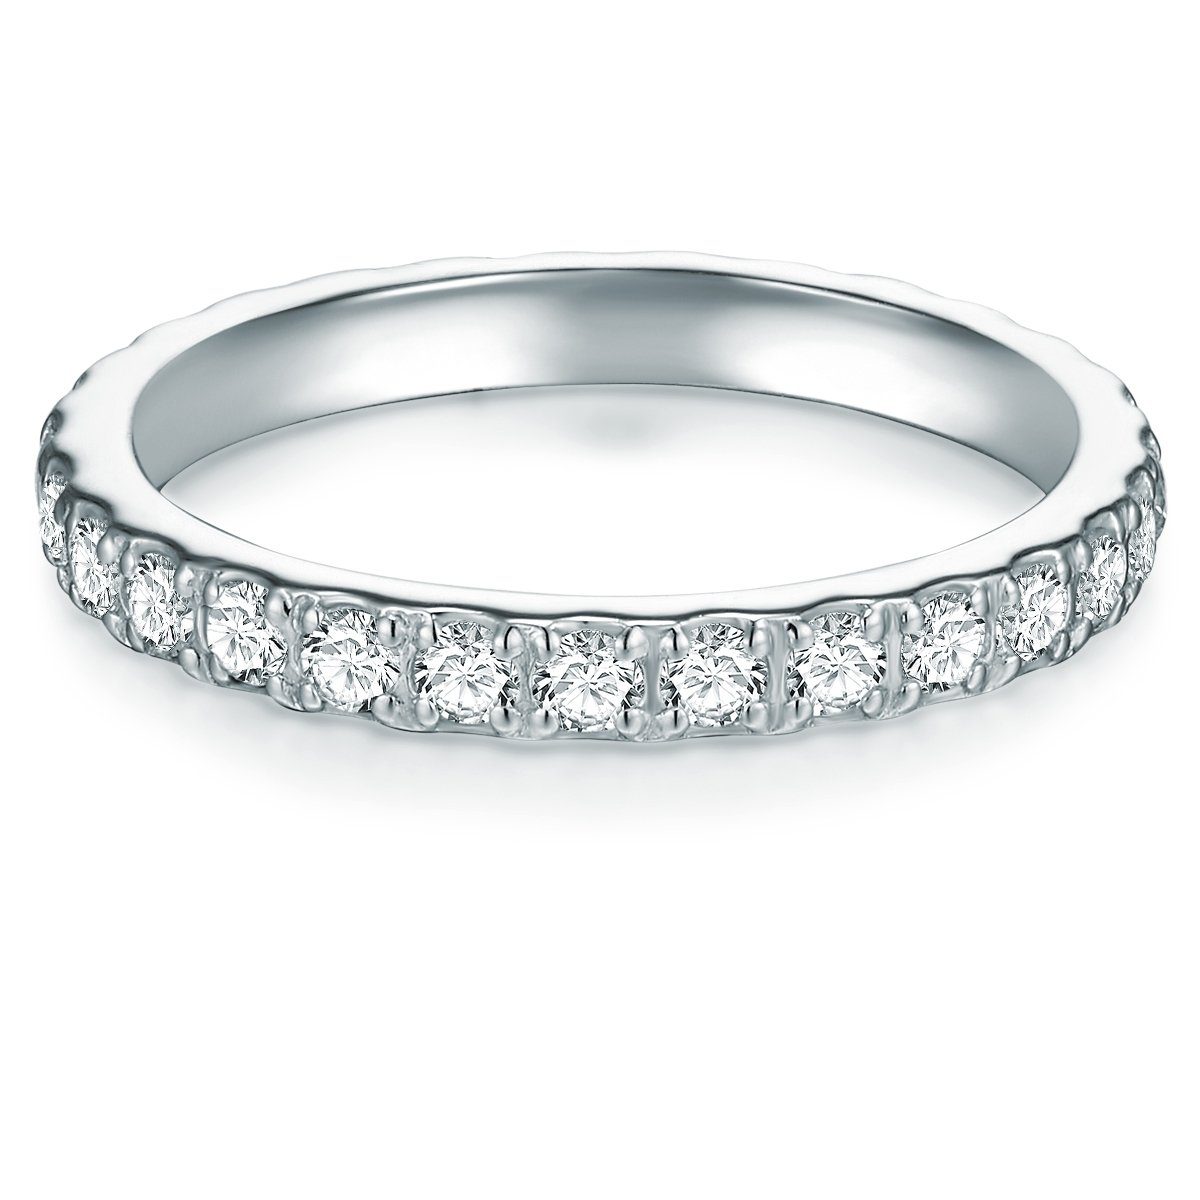 Günstige Ringe für Damen online kaufen » Ringe SALE | OTTO